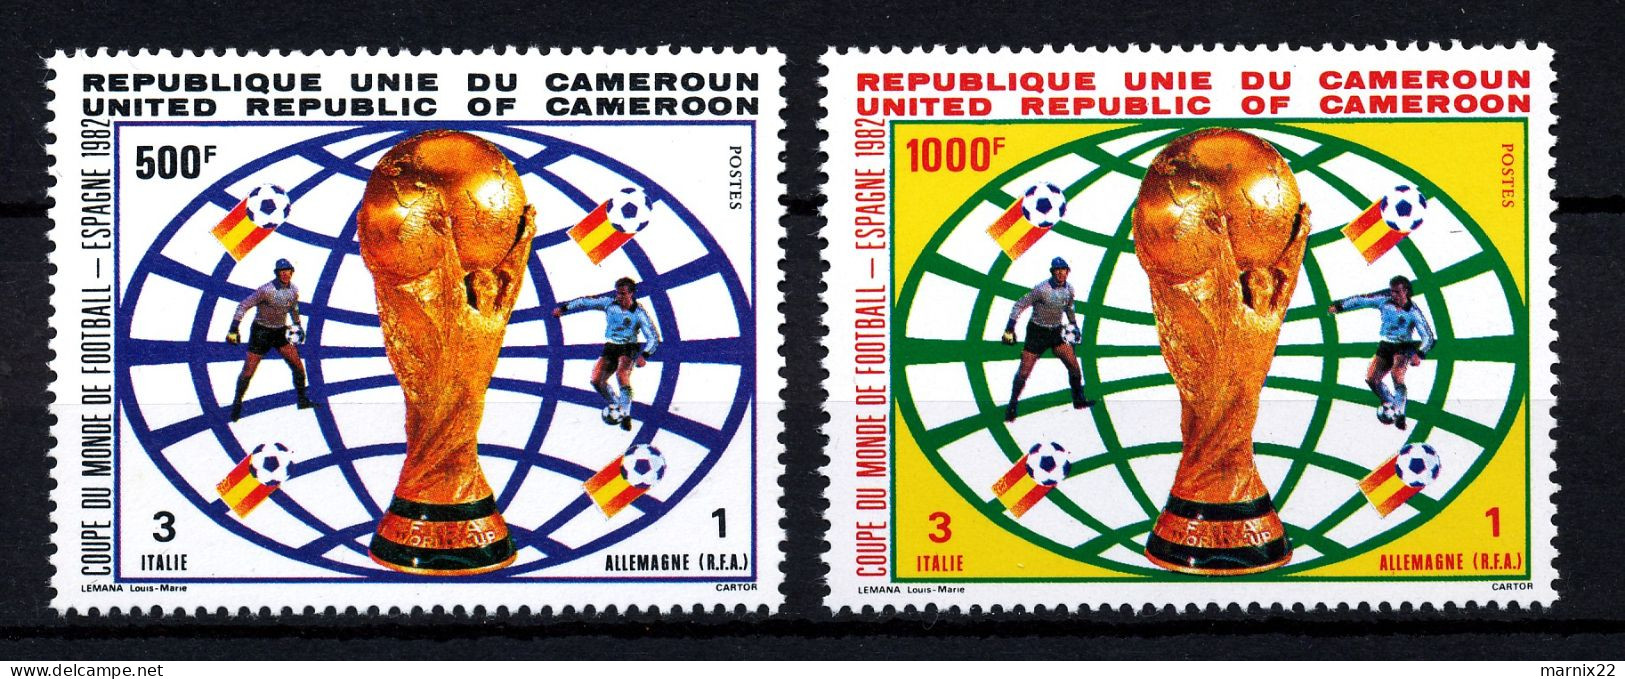 VOETBAL - WERELDKAMPIOENSCHAPPEN 1982 - ITALIA WINNAAR WORLDCHAMPION 1982 - CAMEROUN MNH SET 1982                  Hk165 - 1982 – Espagne